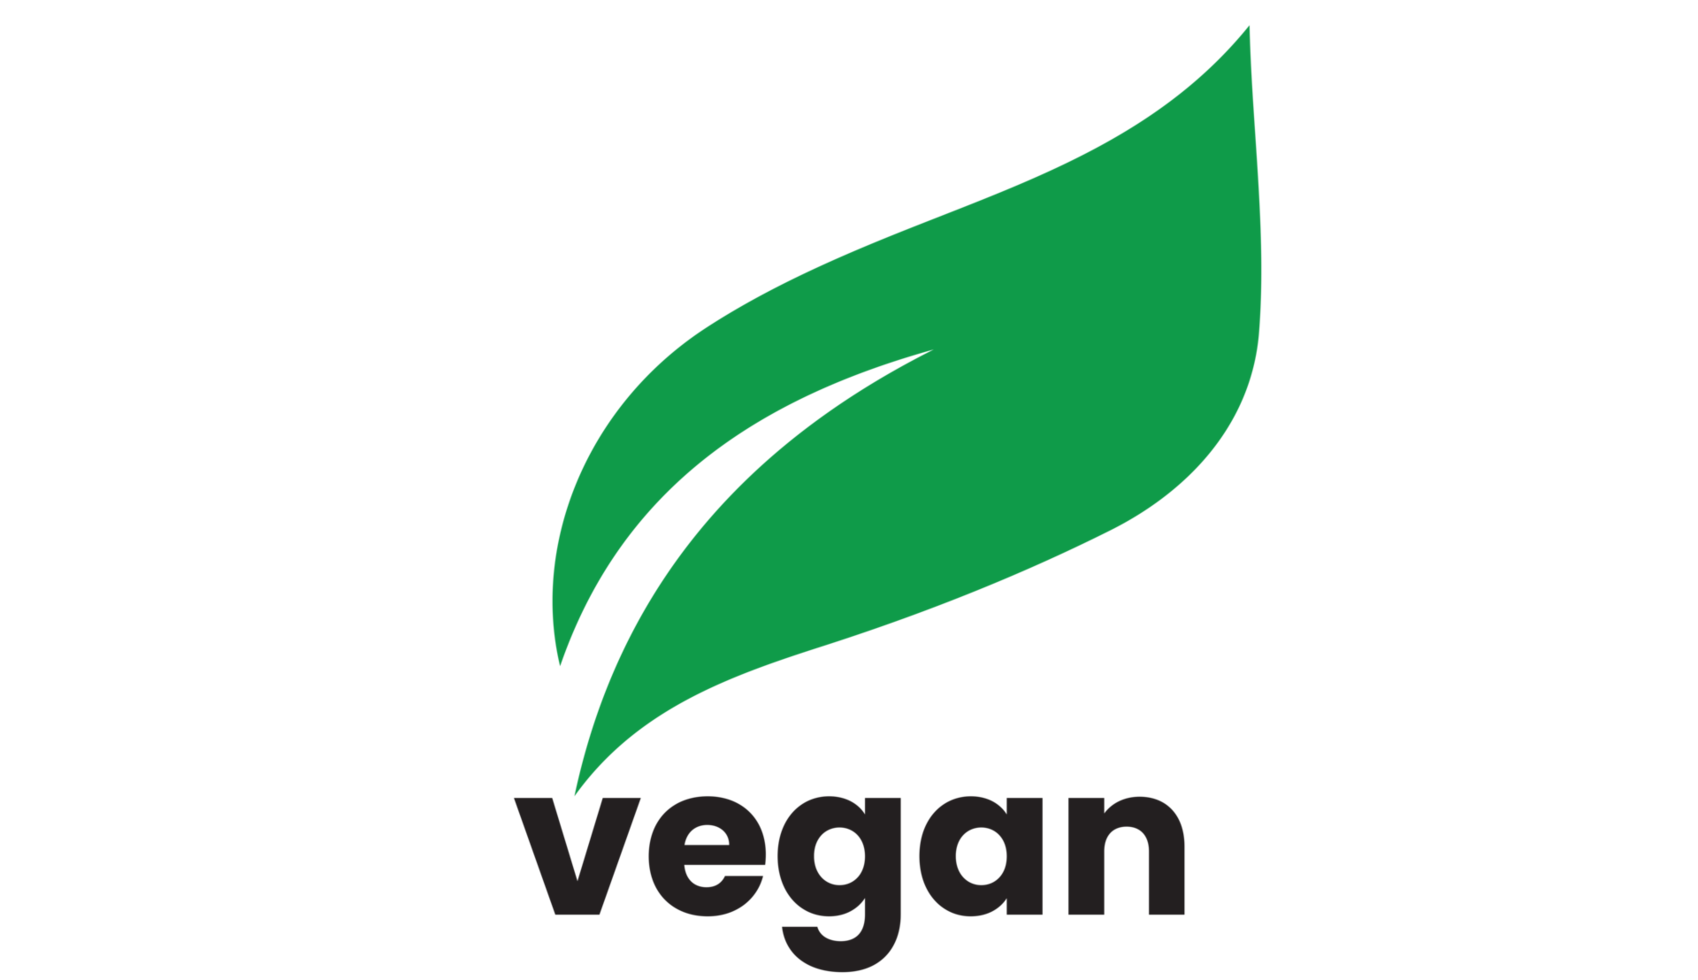 icono vegano sobre fondo transparente png